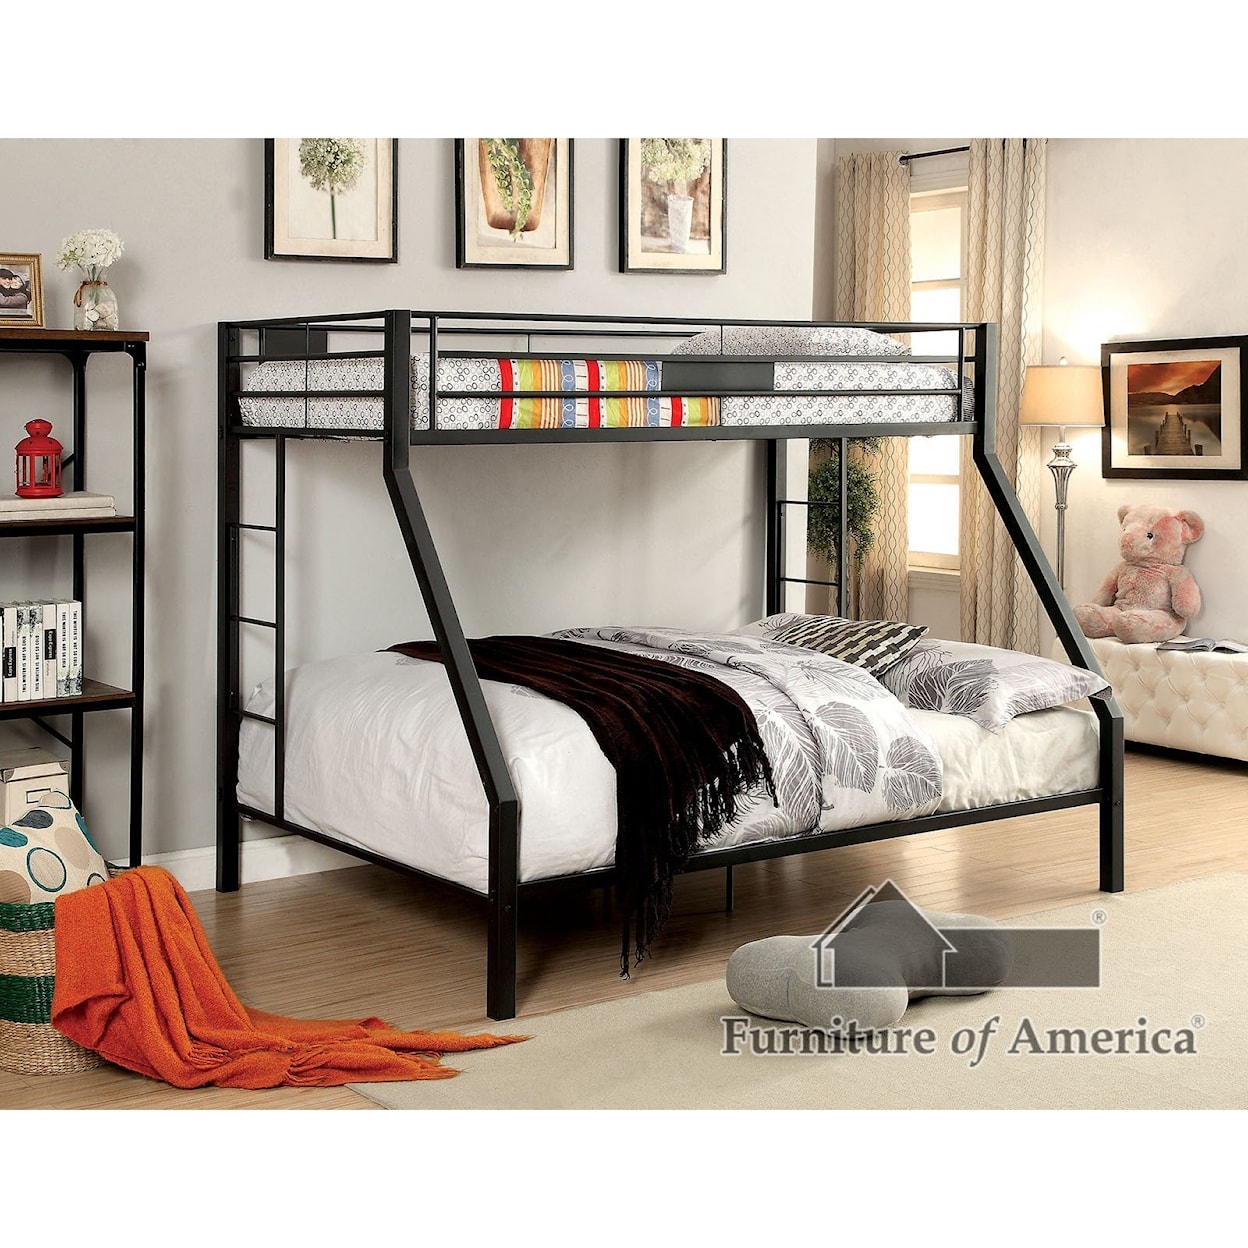 Furniture of America Claren Twin-over-Queen Bunk Bed